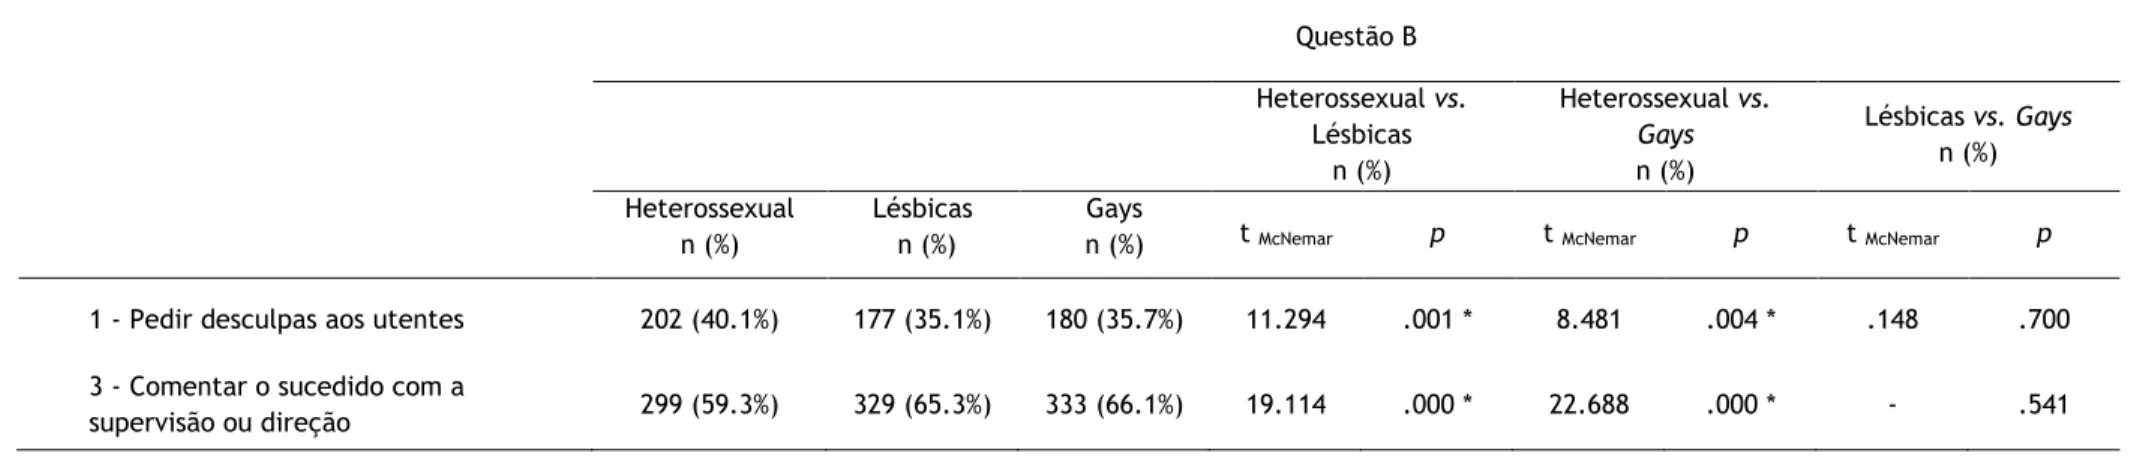 Tabela 7 - Comparação das reações dos participantes segundo o que consideram que deveriam fazer perante as diferentes situações de relações sexuais: Heterossexuais  vs